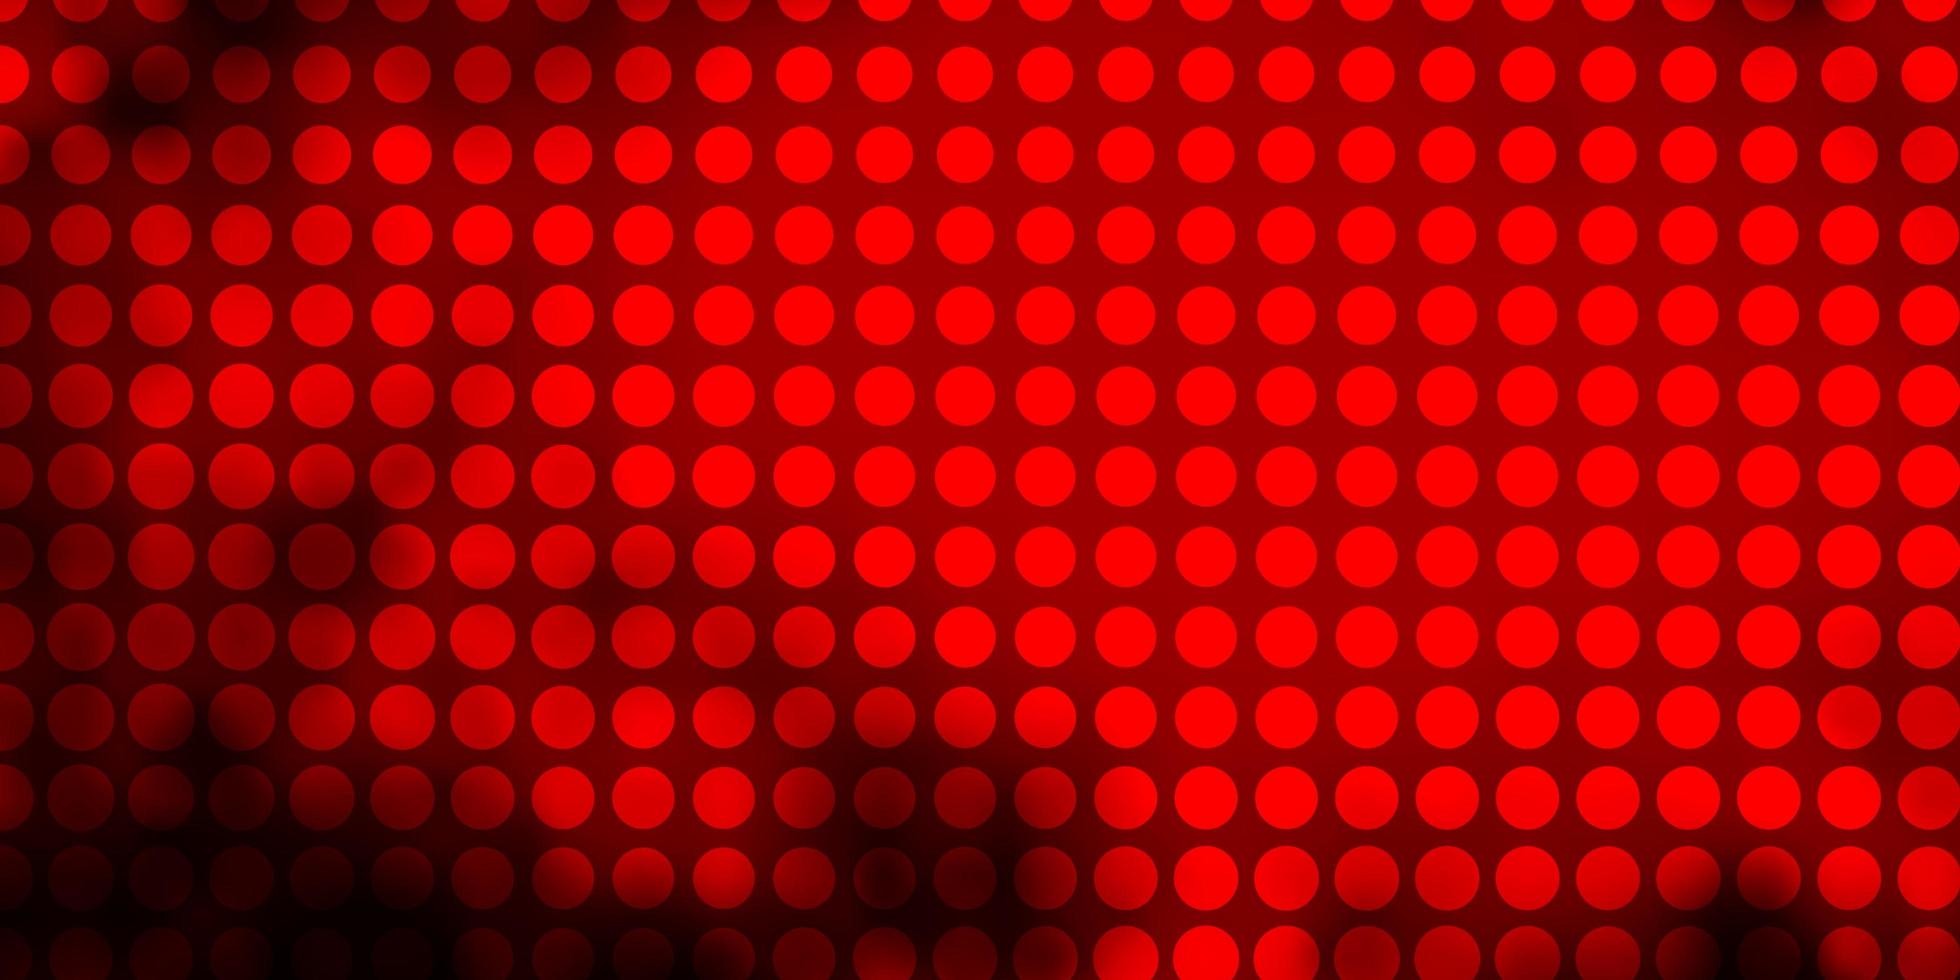 mörk röd vektor bakgrund med cirklar. abstrakt dekorativ design i lutningsstil med bubblor. mönster för tapeter, gardiner.